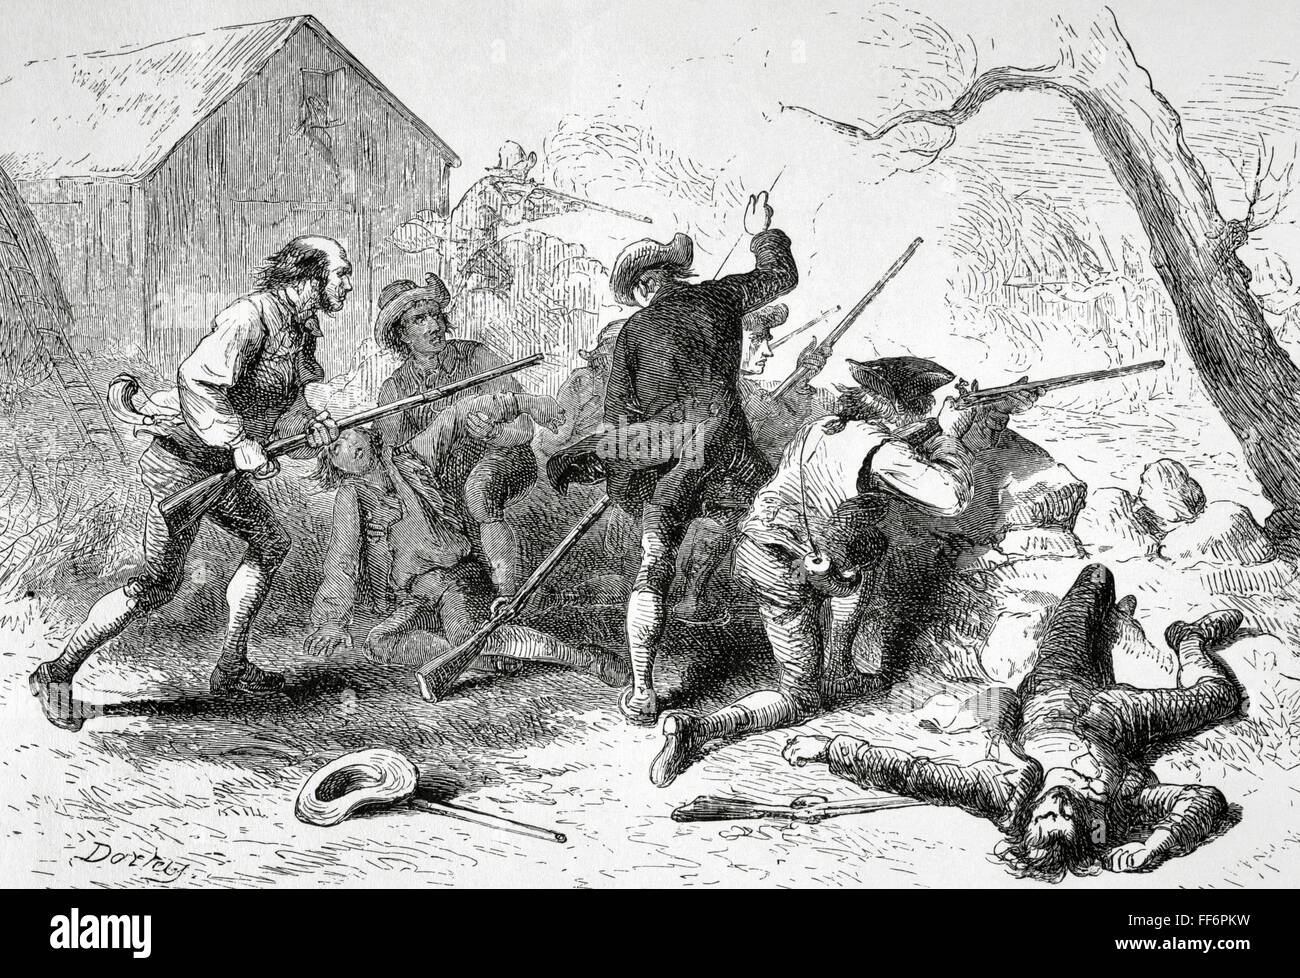 La guerra rivoluzionaria americana (1775-1783). Battaglie di Lexington e Concord. Aprile 19, 1775. Incisione di Darley. La Rivoluzione Americana, xix secolo. Foto Stock